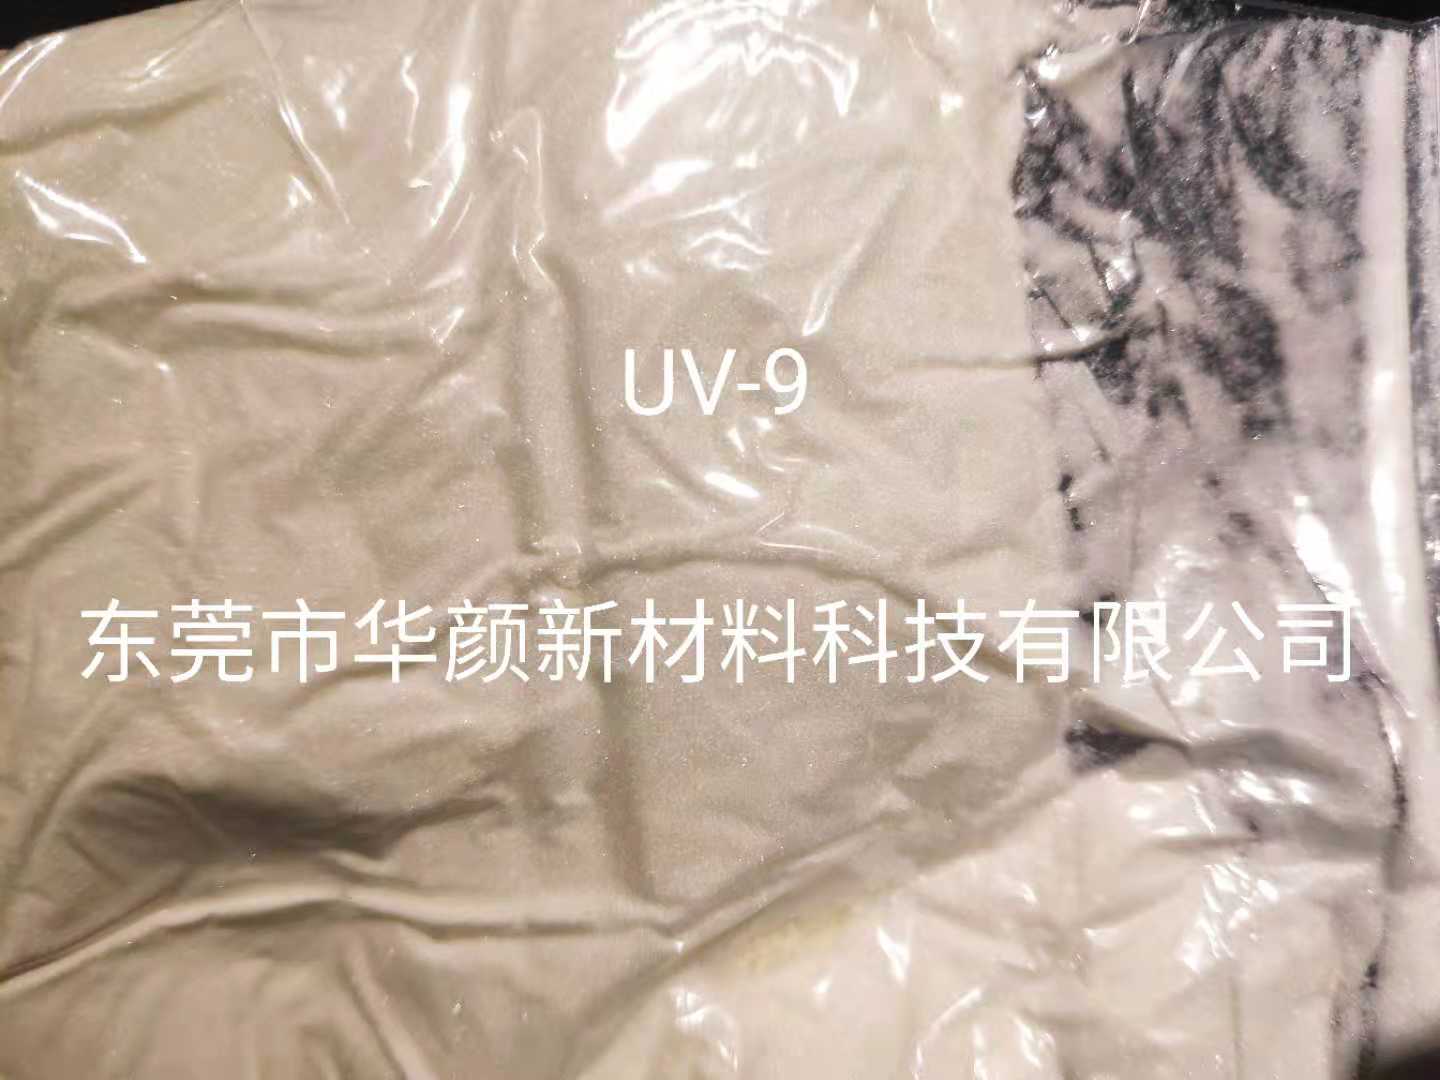 UV-9